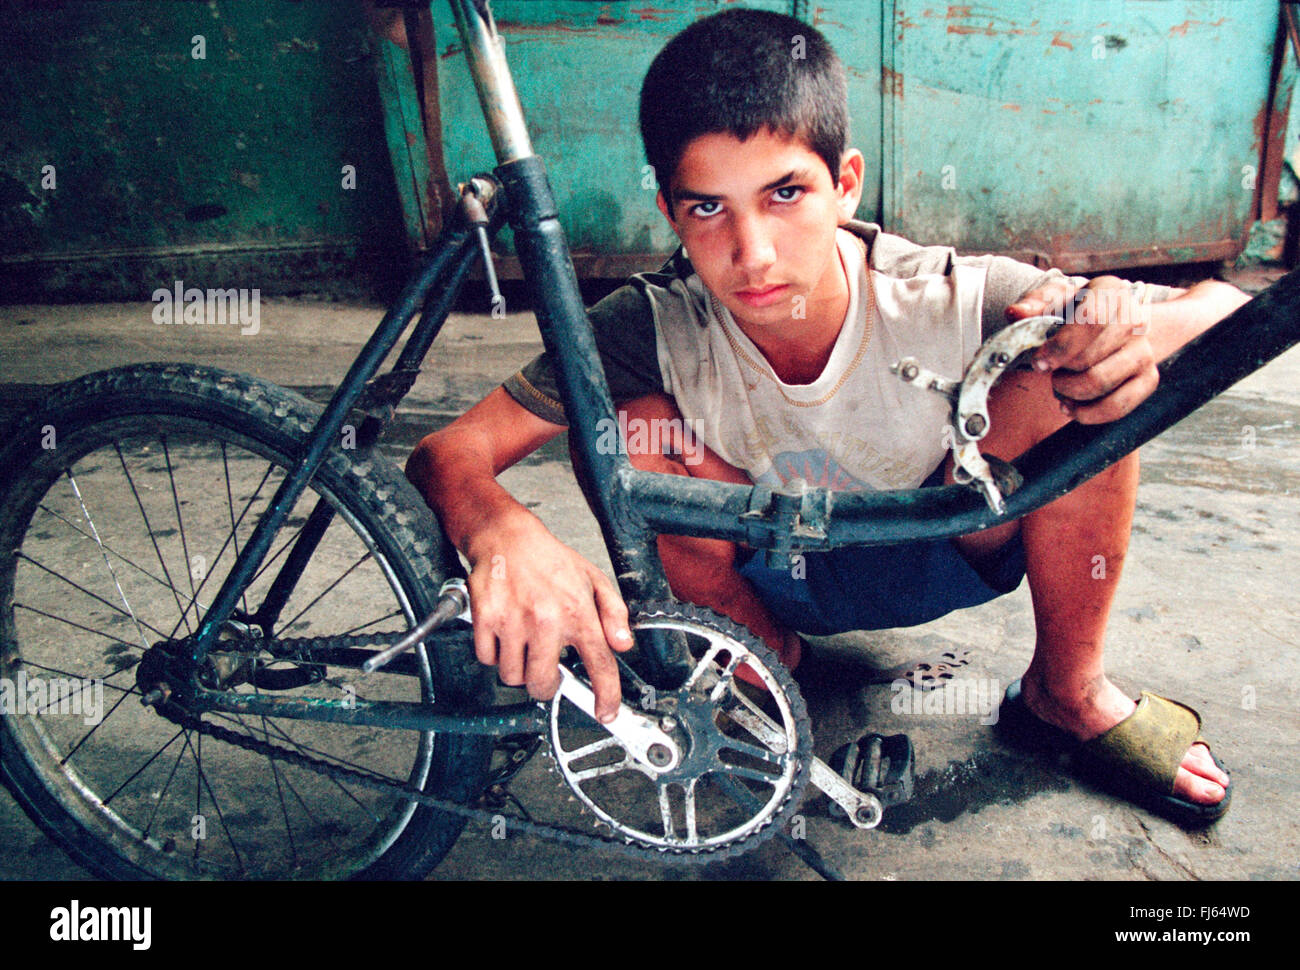 Cuban boy Fernando Castillo repairing his bicycle on a garage entrance., Cuba Stock Photo